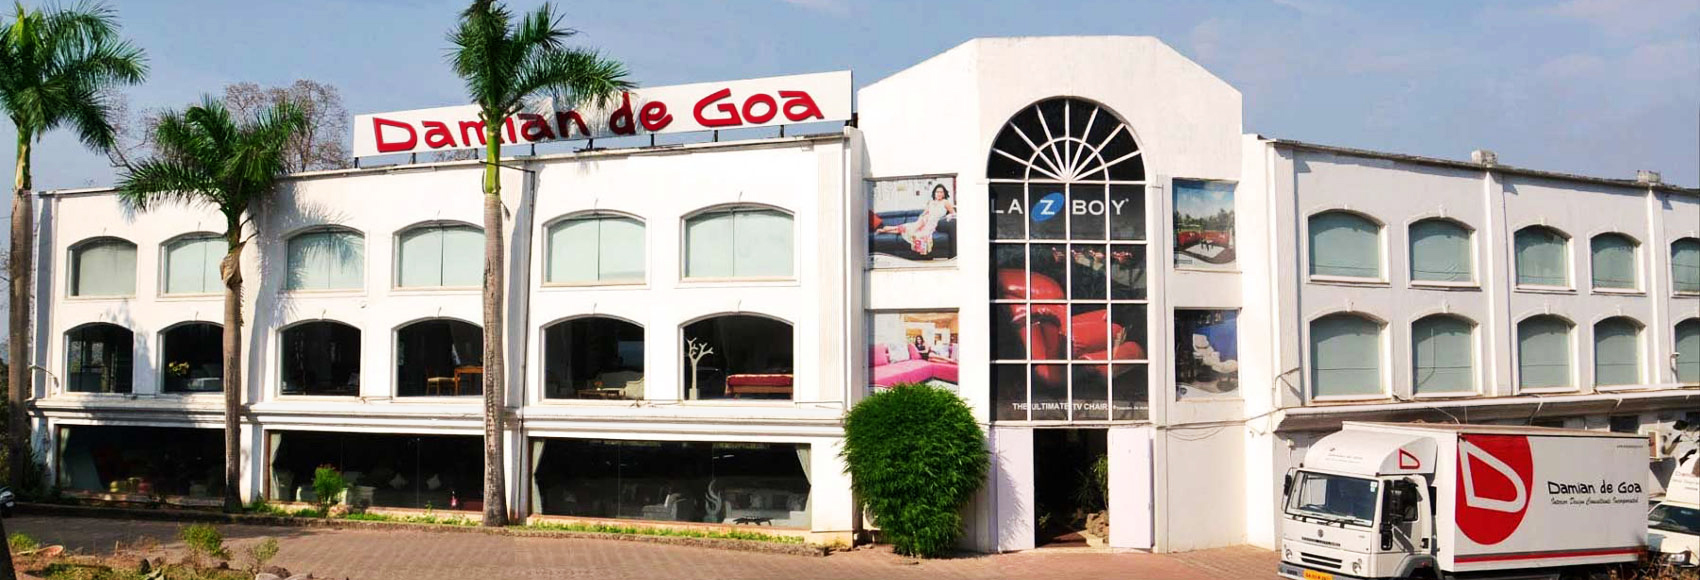 Damian de Goa - Furniture store in Goa